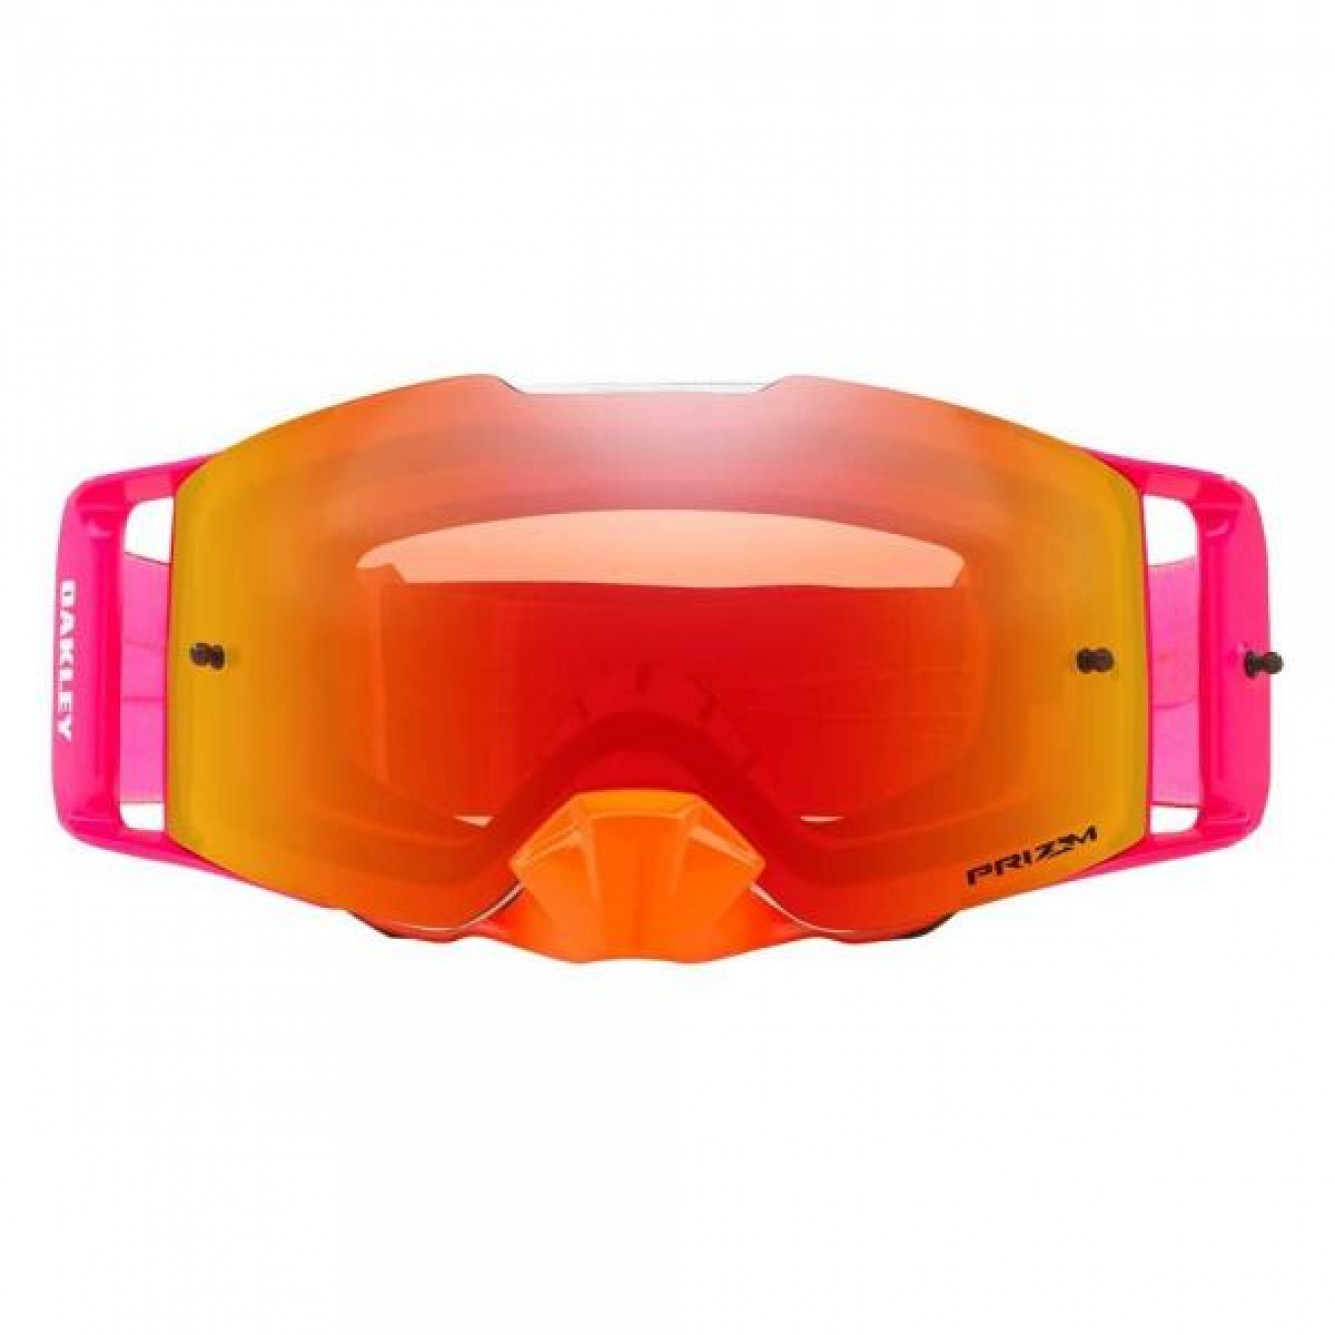 Oakley | Front Line Crossbril Pinned Race Oranje / Rood